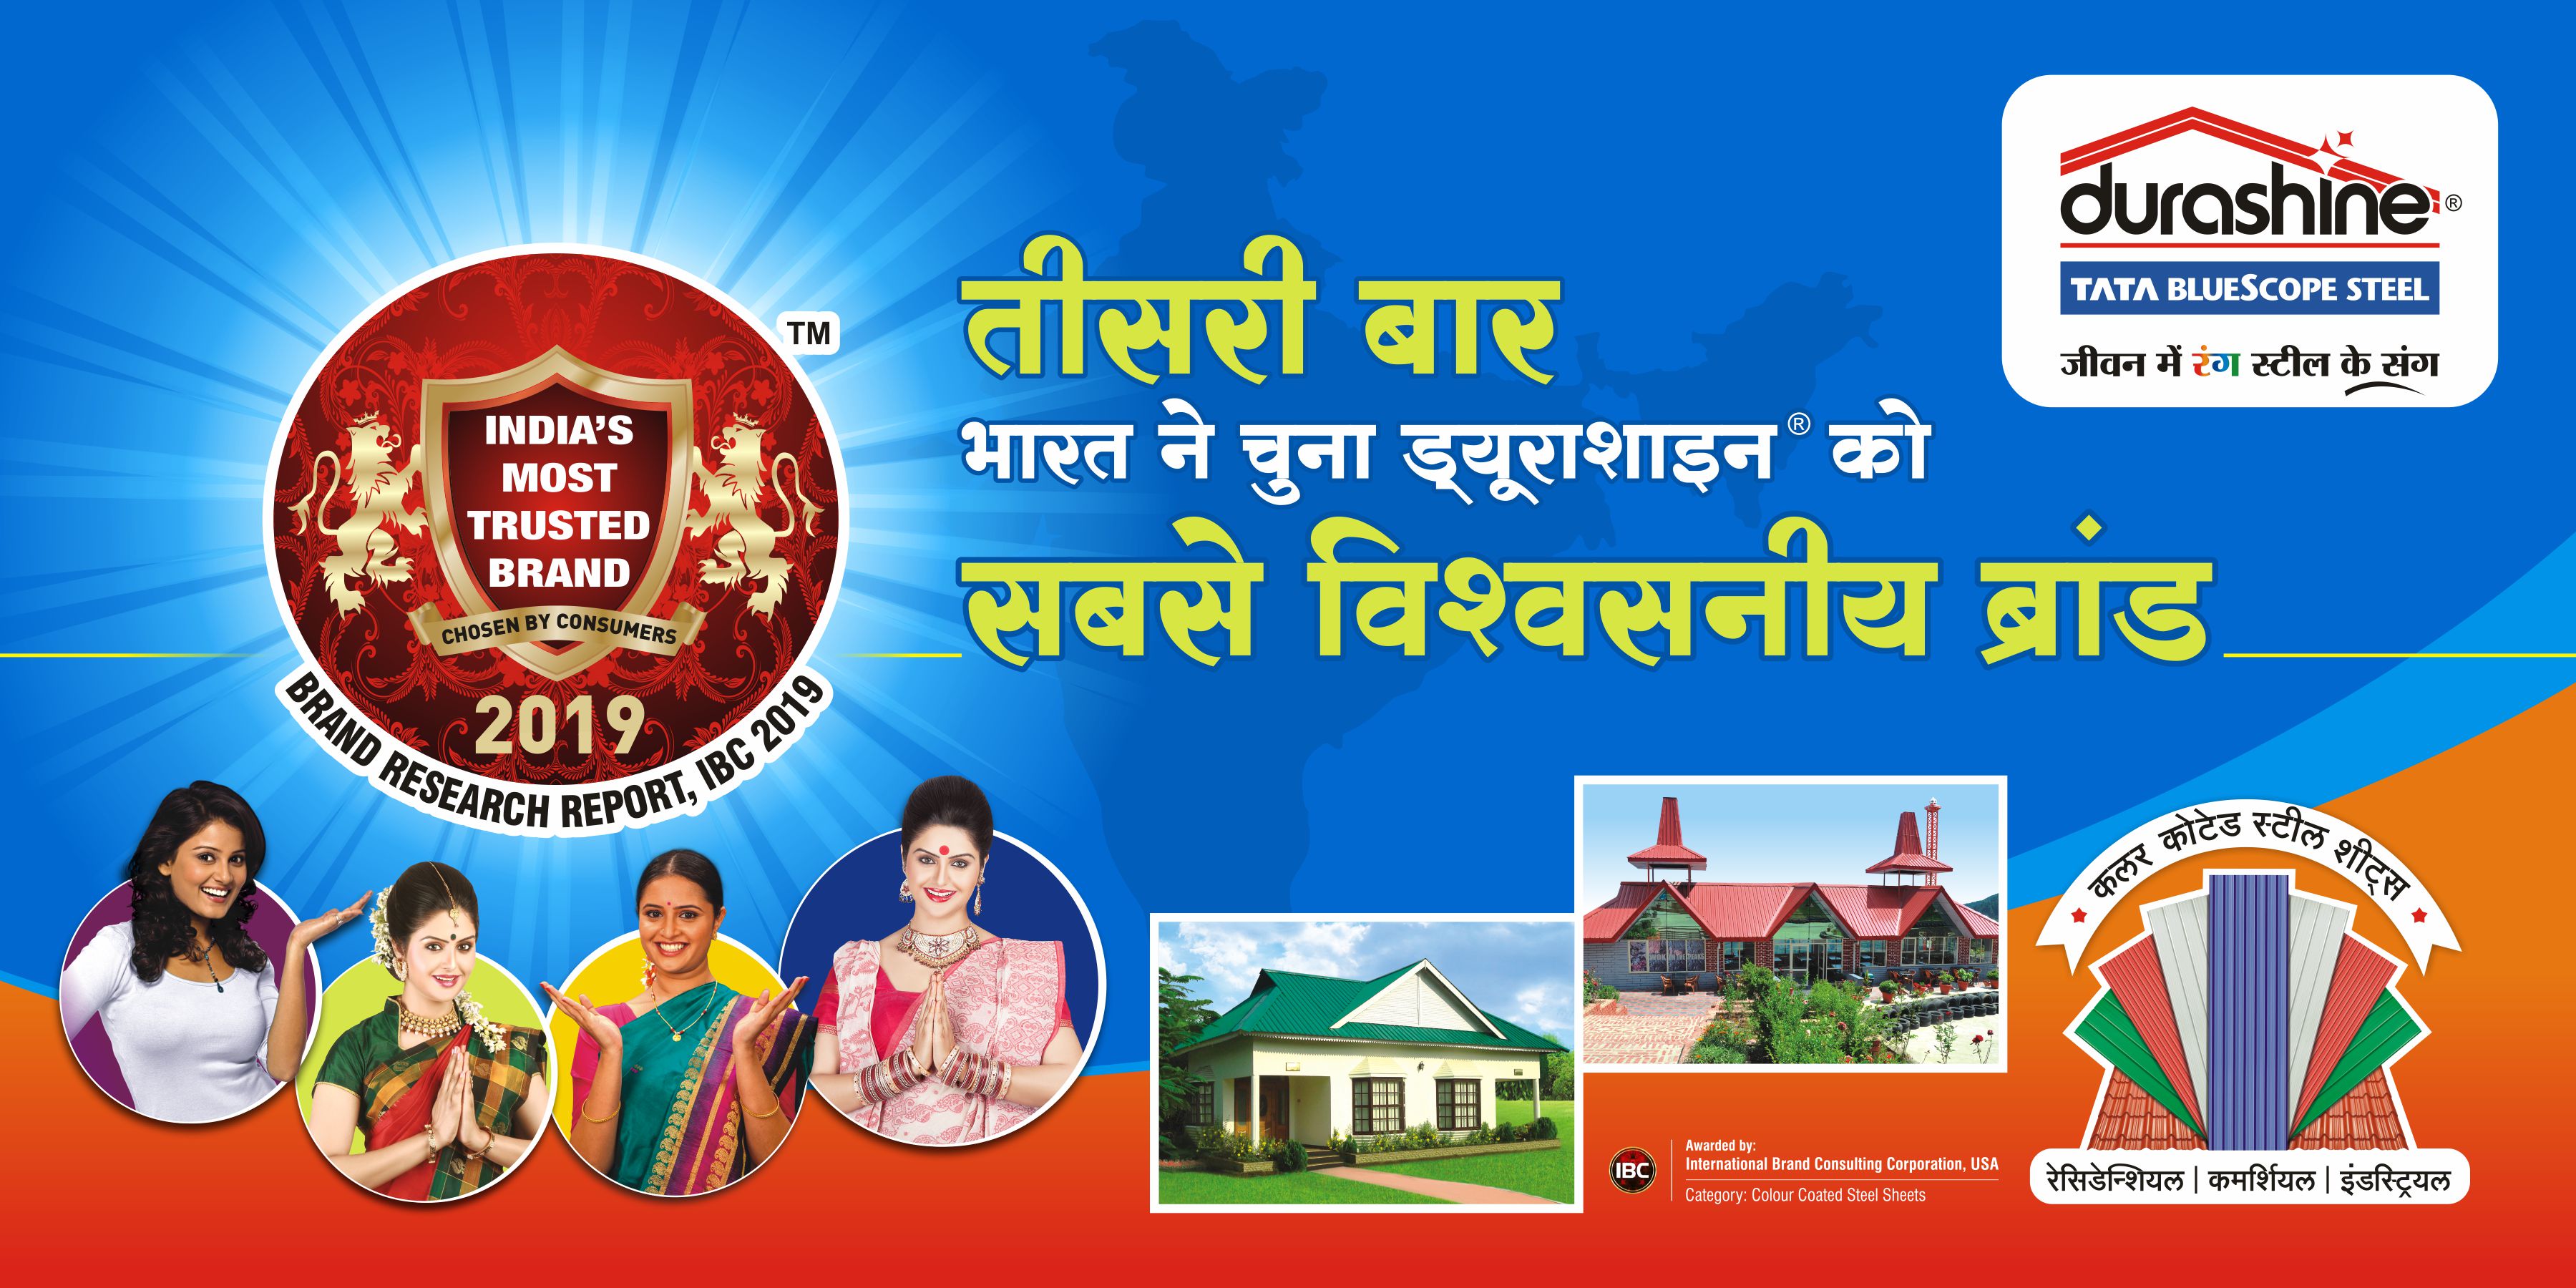 Durashine banner image in hindi